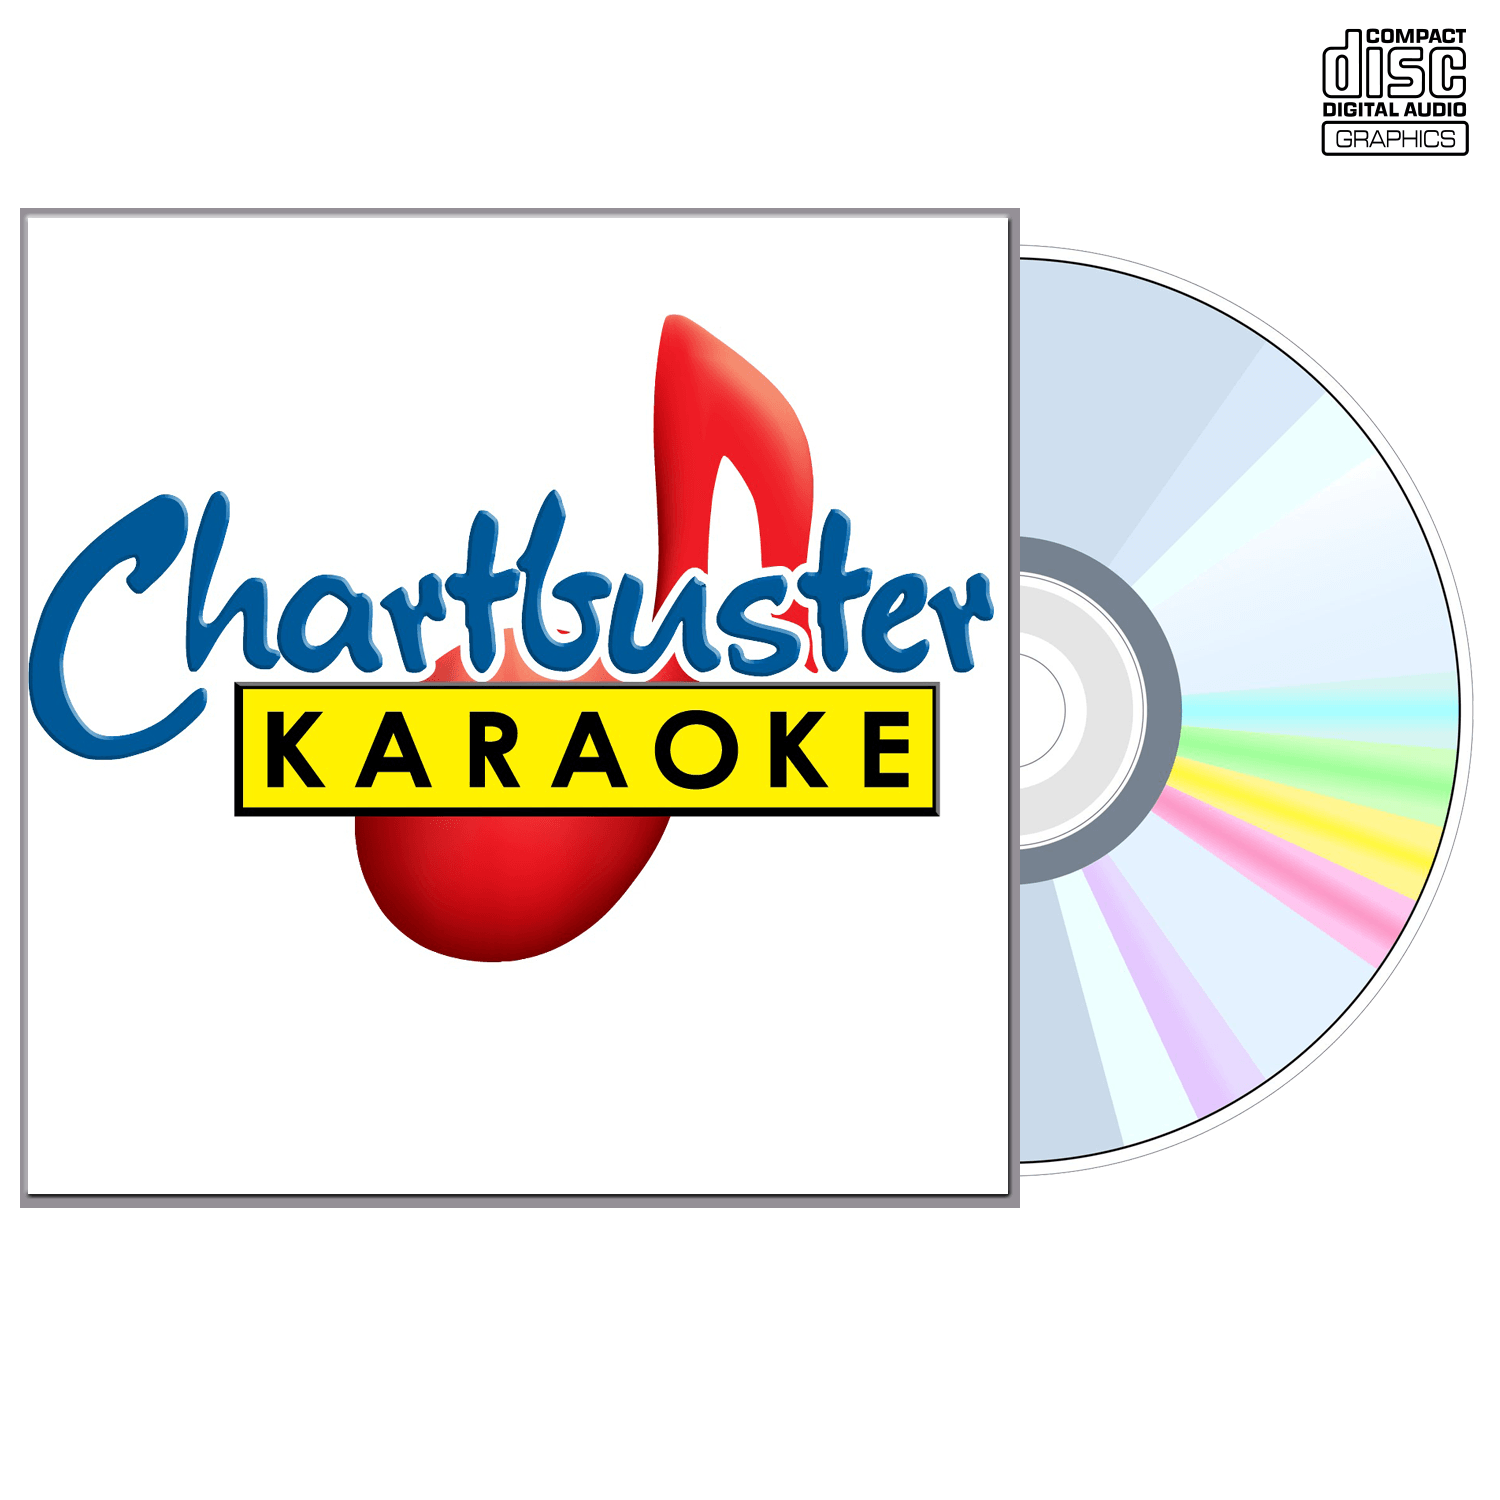 Amy Grant Vol 1 - CD+G - Chartbuster Karaoke - Karaoke Home Entertainment